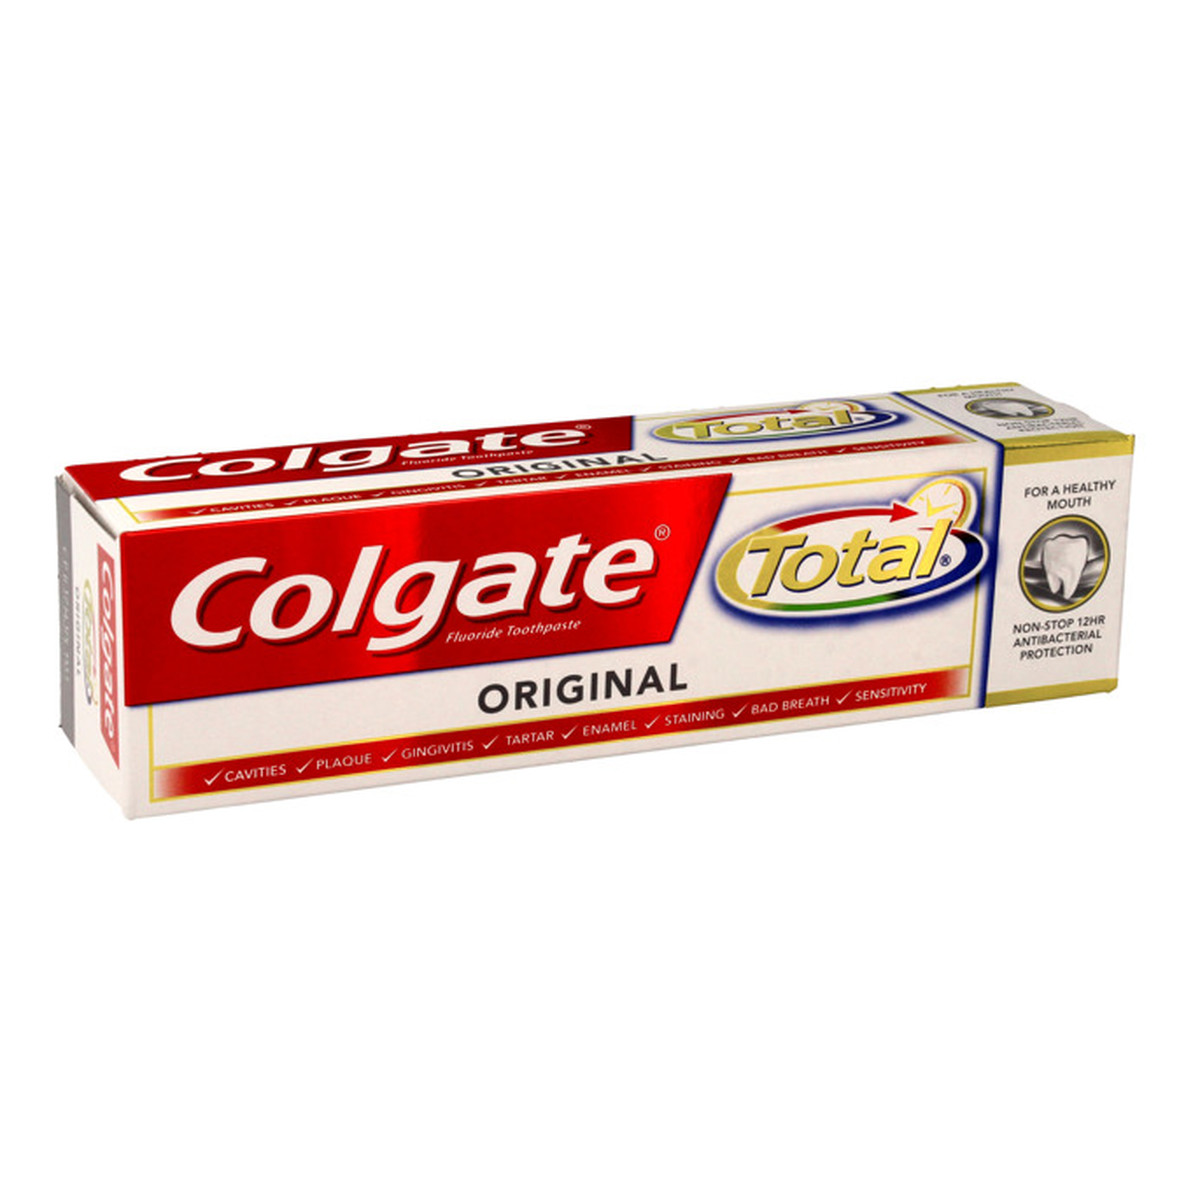 Colgate Total Original odświeżająca pasta do zębów 75ml